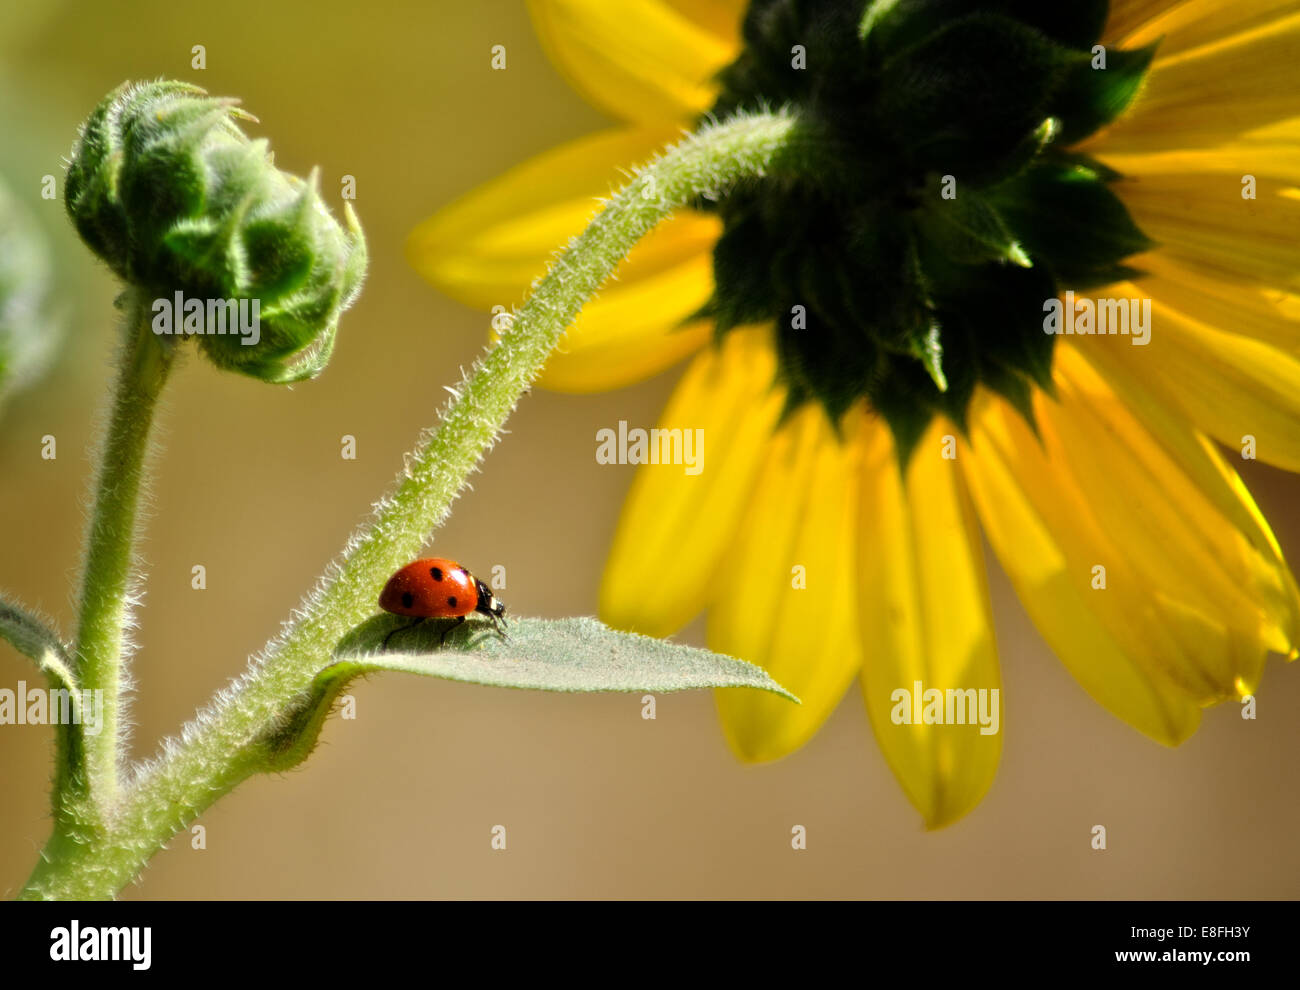 Ladybug on leaf of sunflower, Colorado, United States Stock Photo